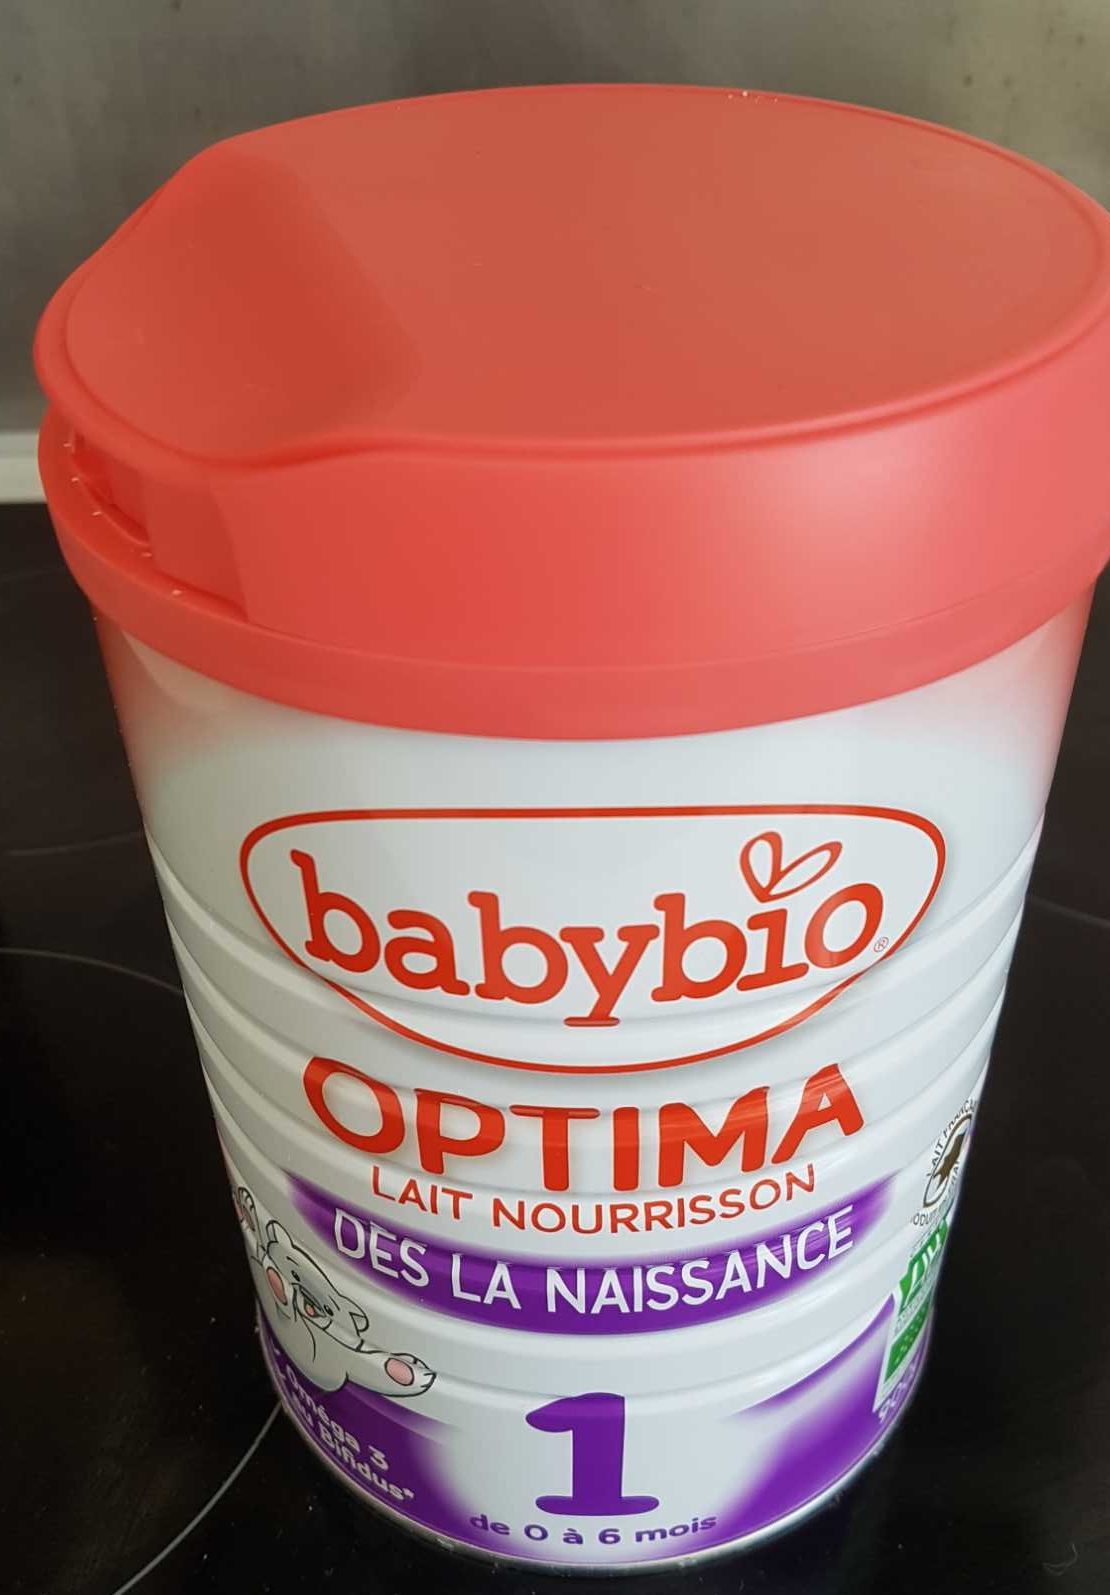 Optima - Lait nourrissant dès la naissance - Product - fr